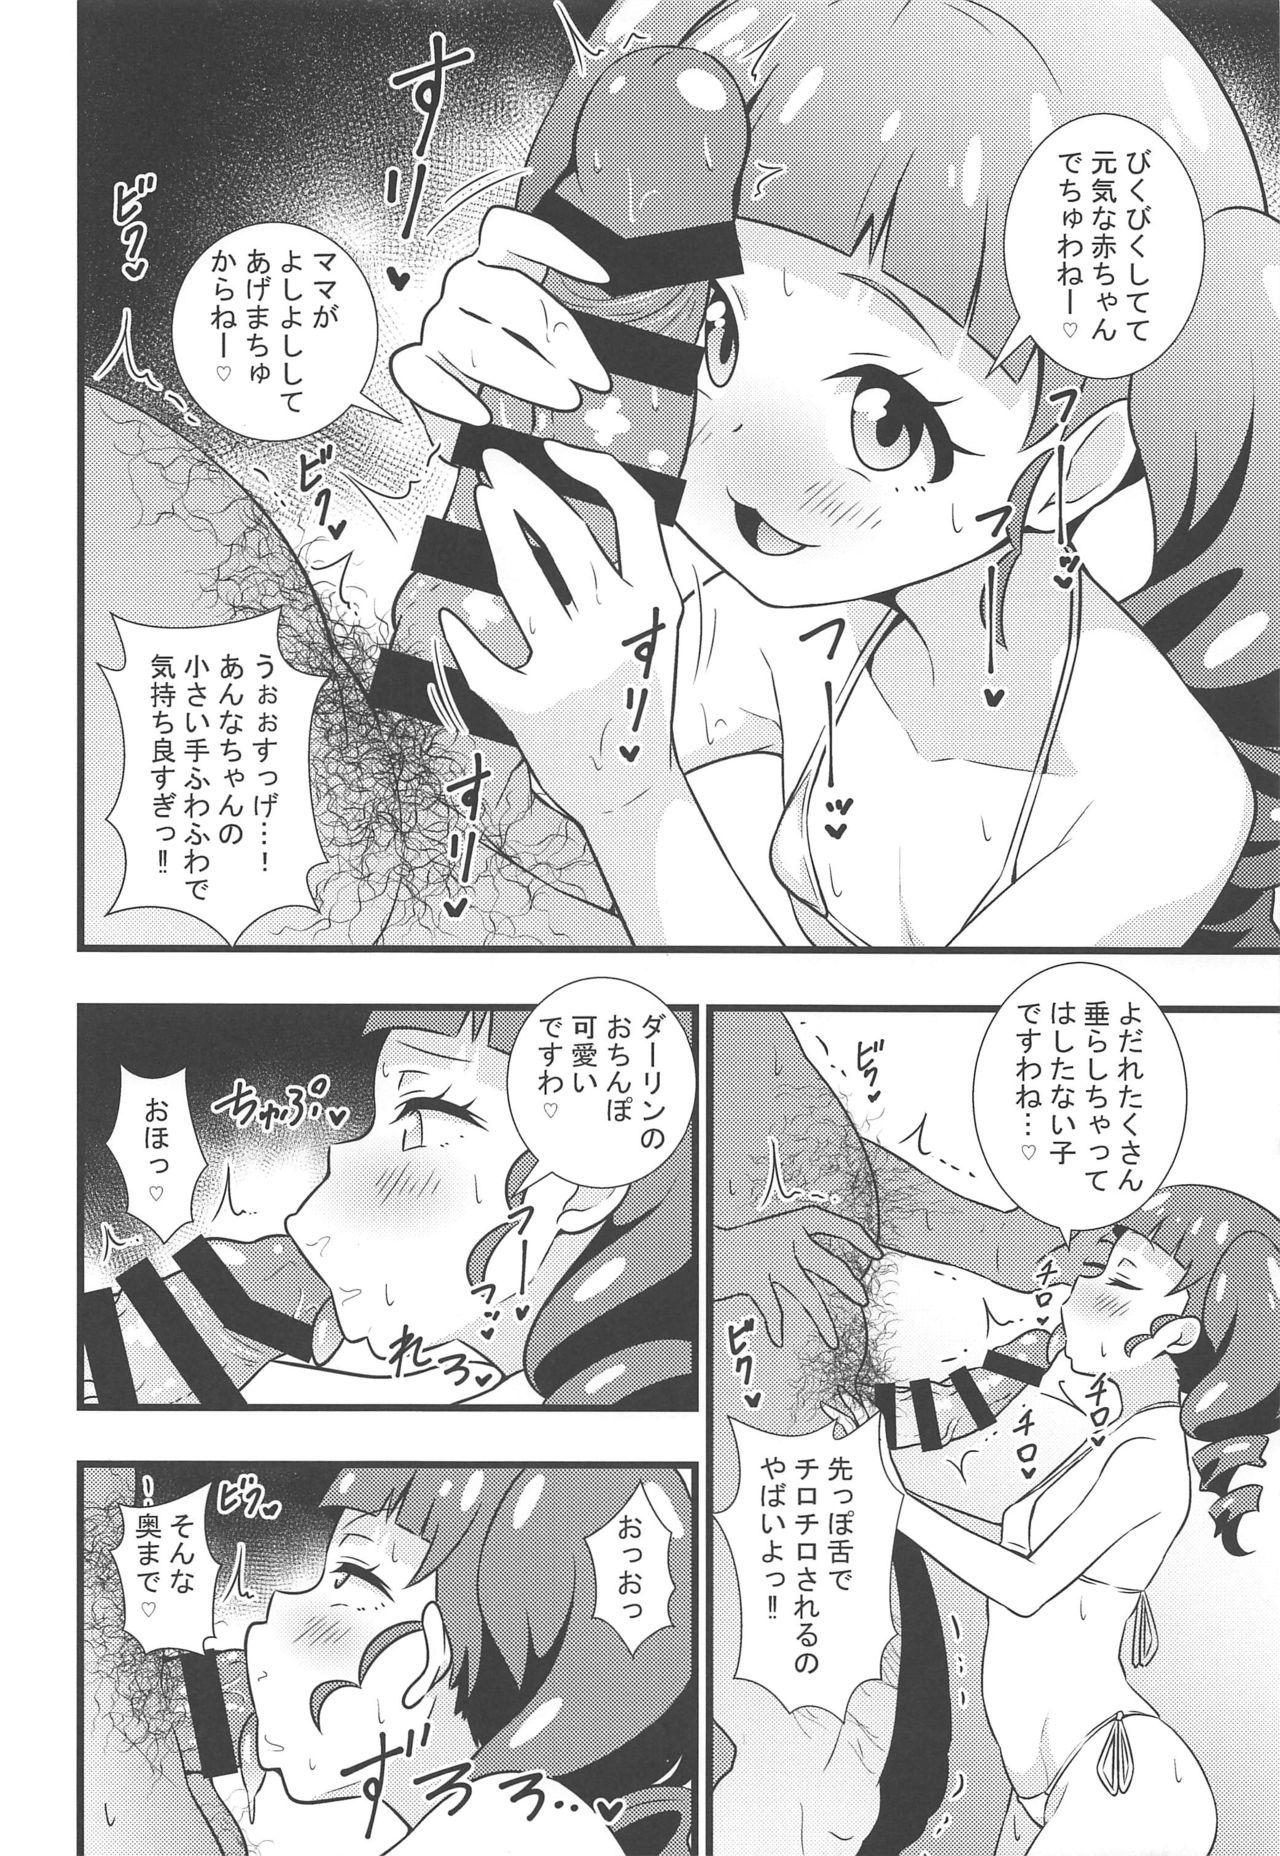 Jockstrap Anna-chan no Hanayome Shugyou - Kiratto pri chan Nasty - Page 5